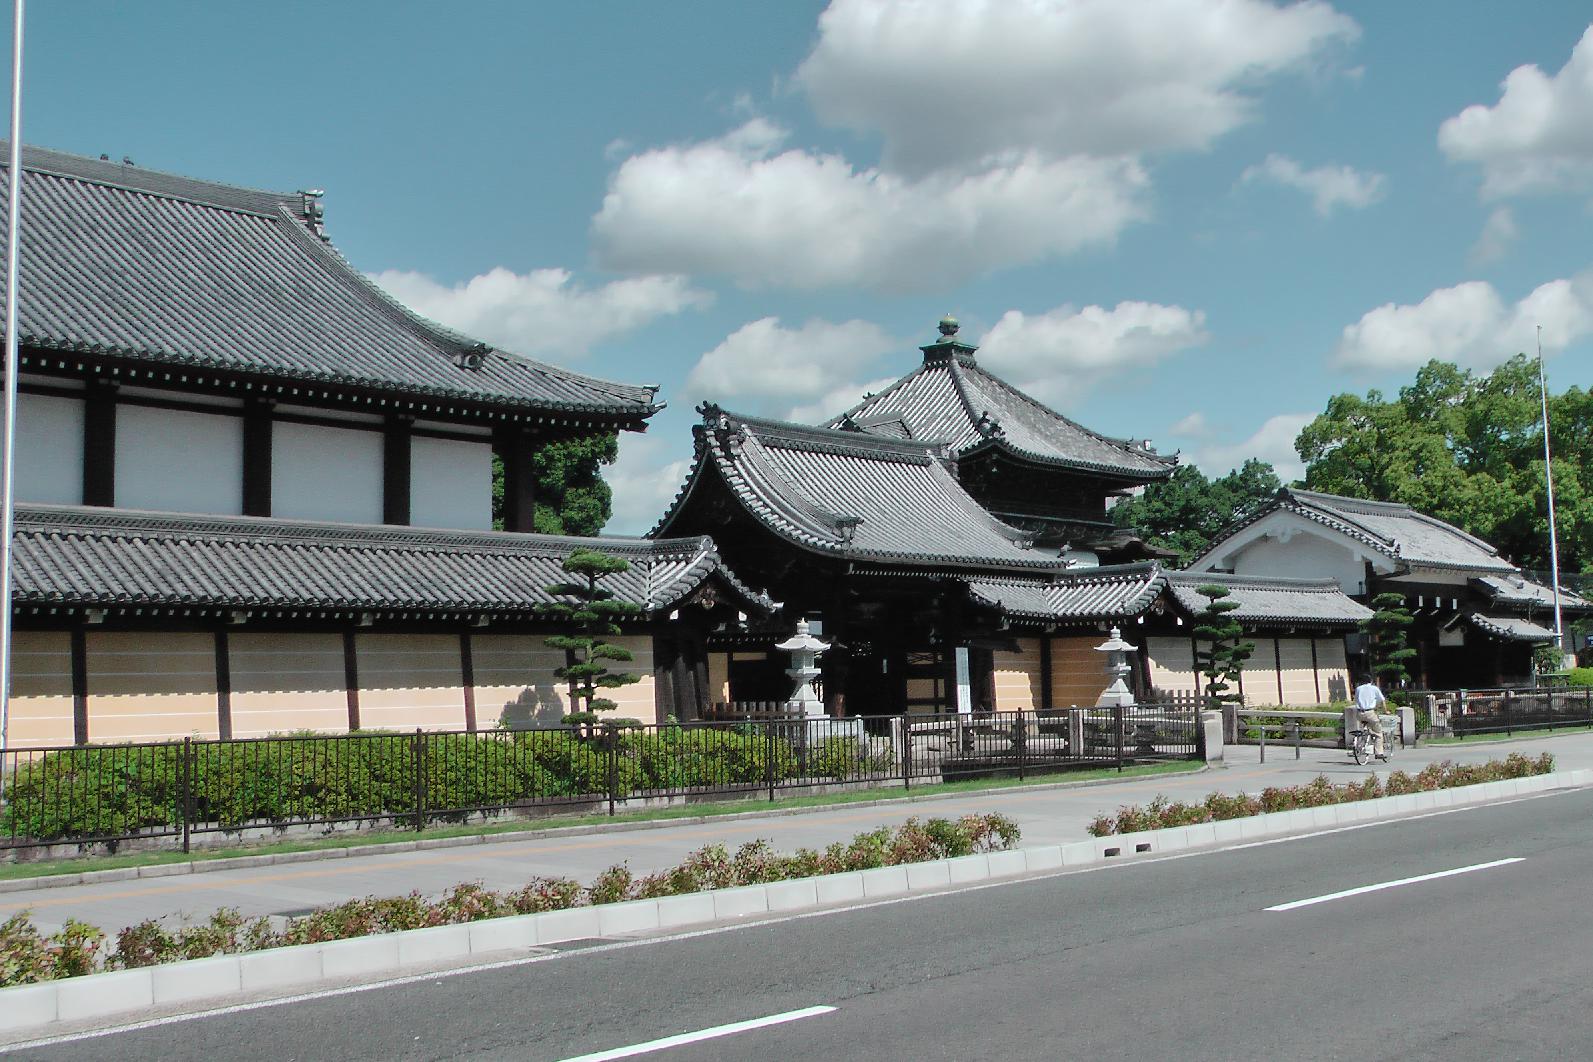 In front of the Nishi Hongan-ji Temple